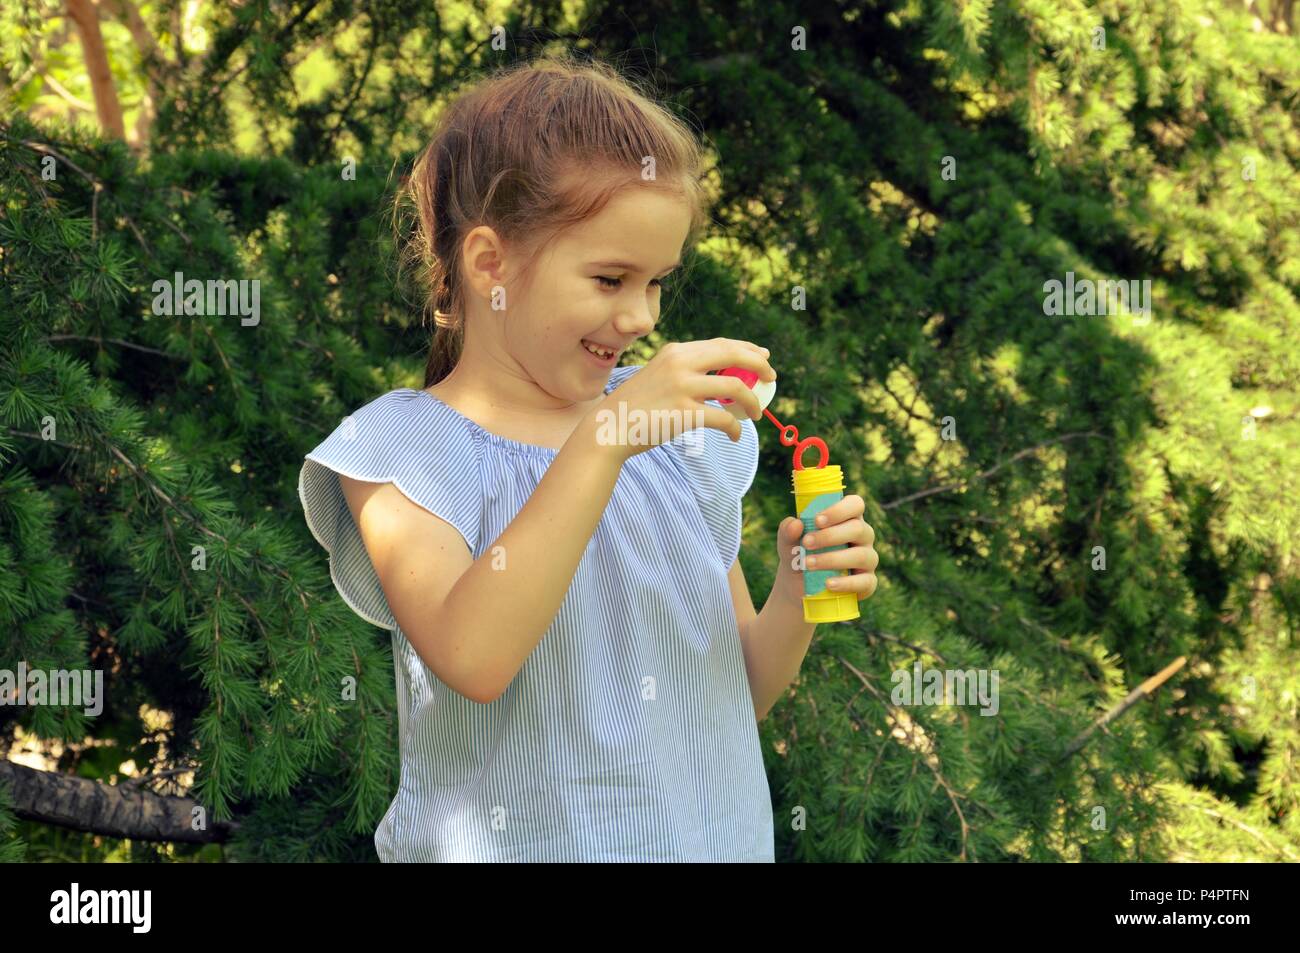 Carino capelli biondi girl, preparando a soffiare le bolle di acqua nel parco, verdi alberi di sfondo, il fuoco selettivo, spazio di copia Foto Stock